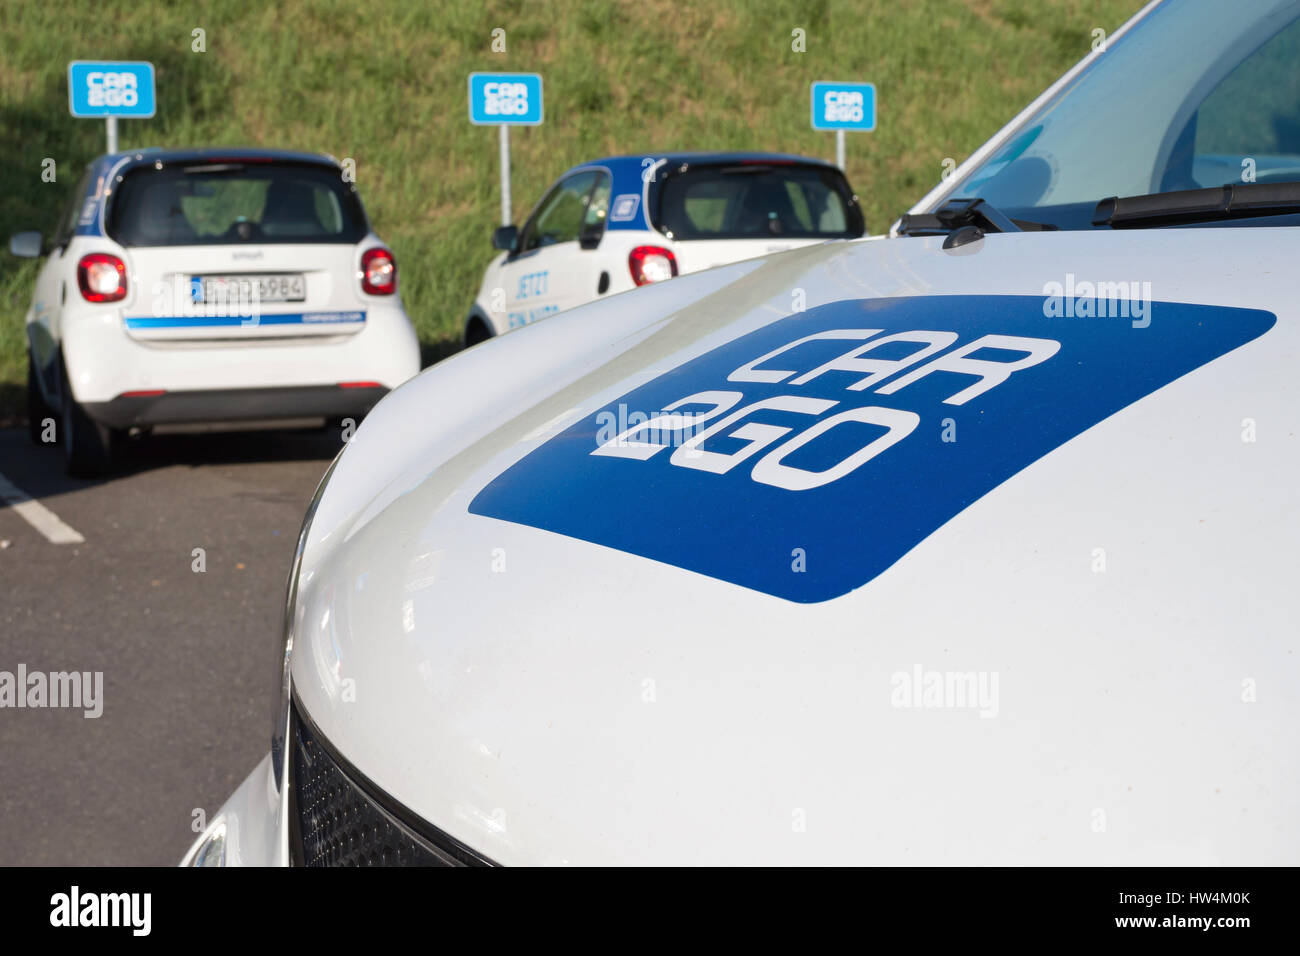 Car2go autopartage Smart fortwo. car2Go est une filiale de Daimler AG fournissant des services d'autopartage dans les villes européennes et nord-américaines. Banque D'Images